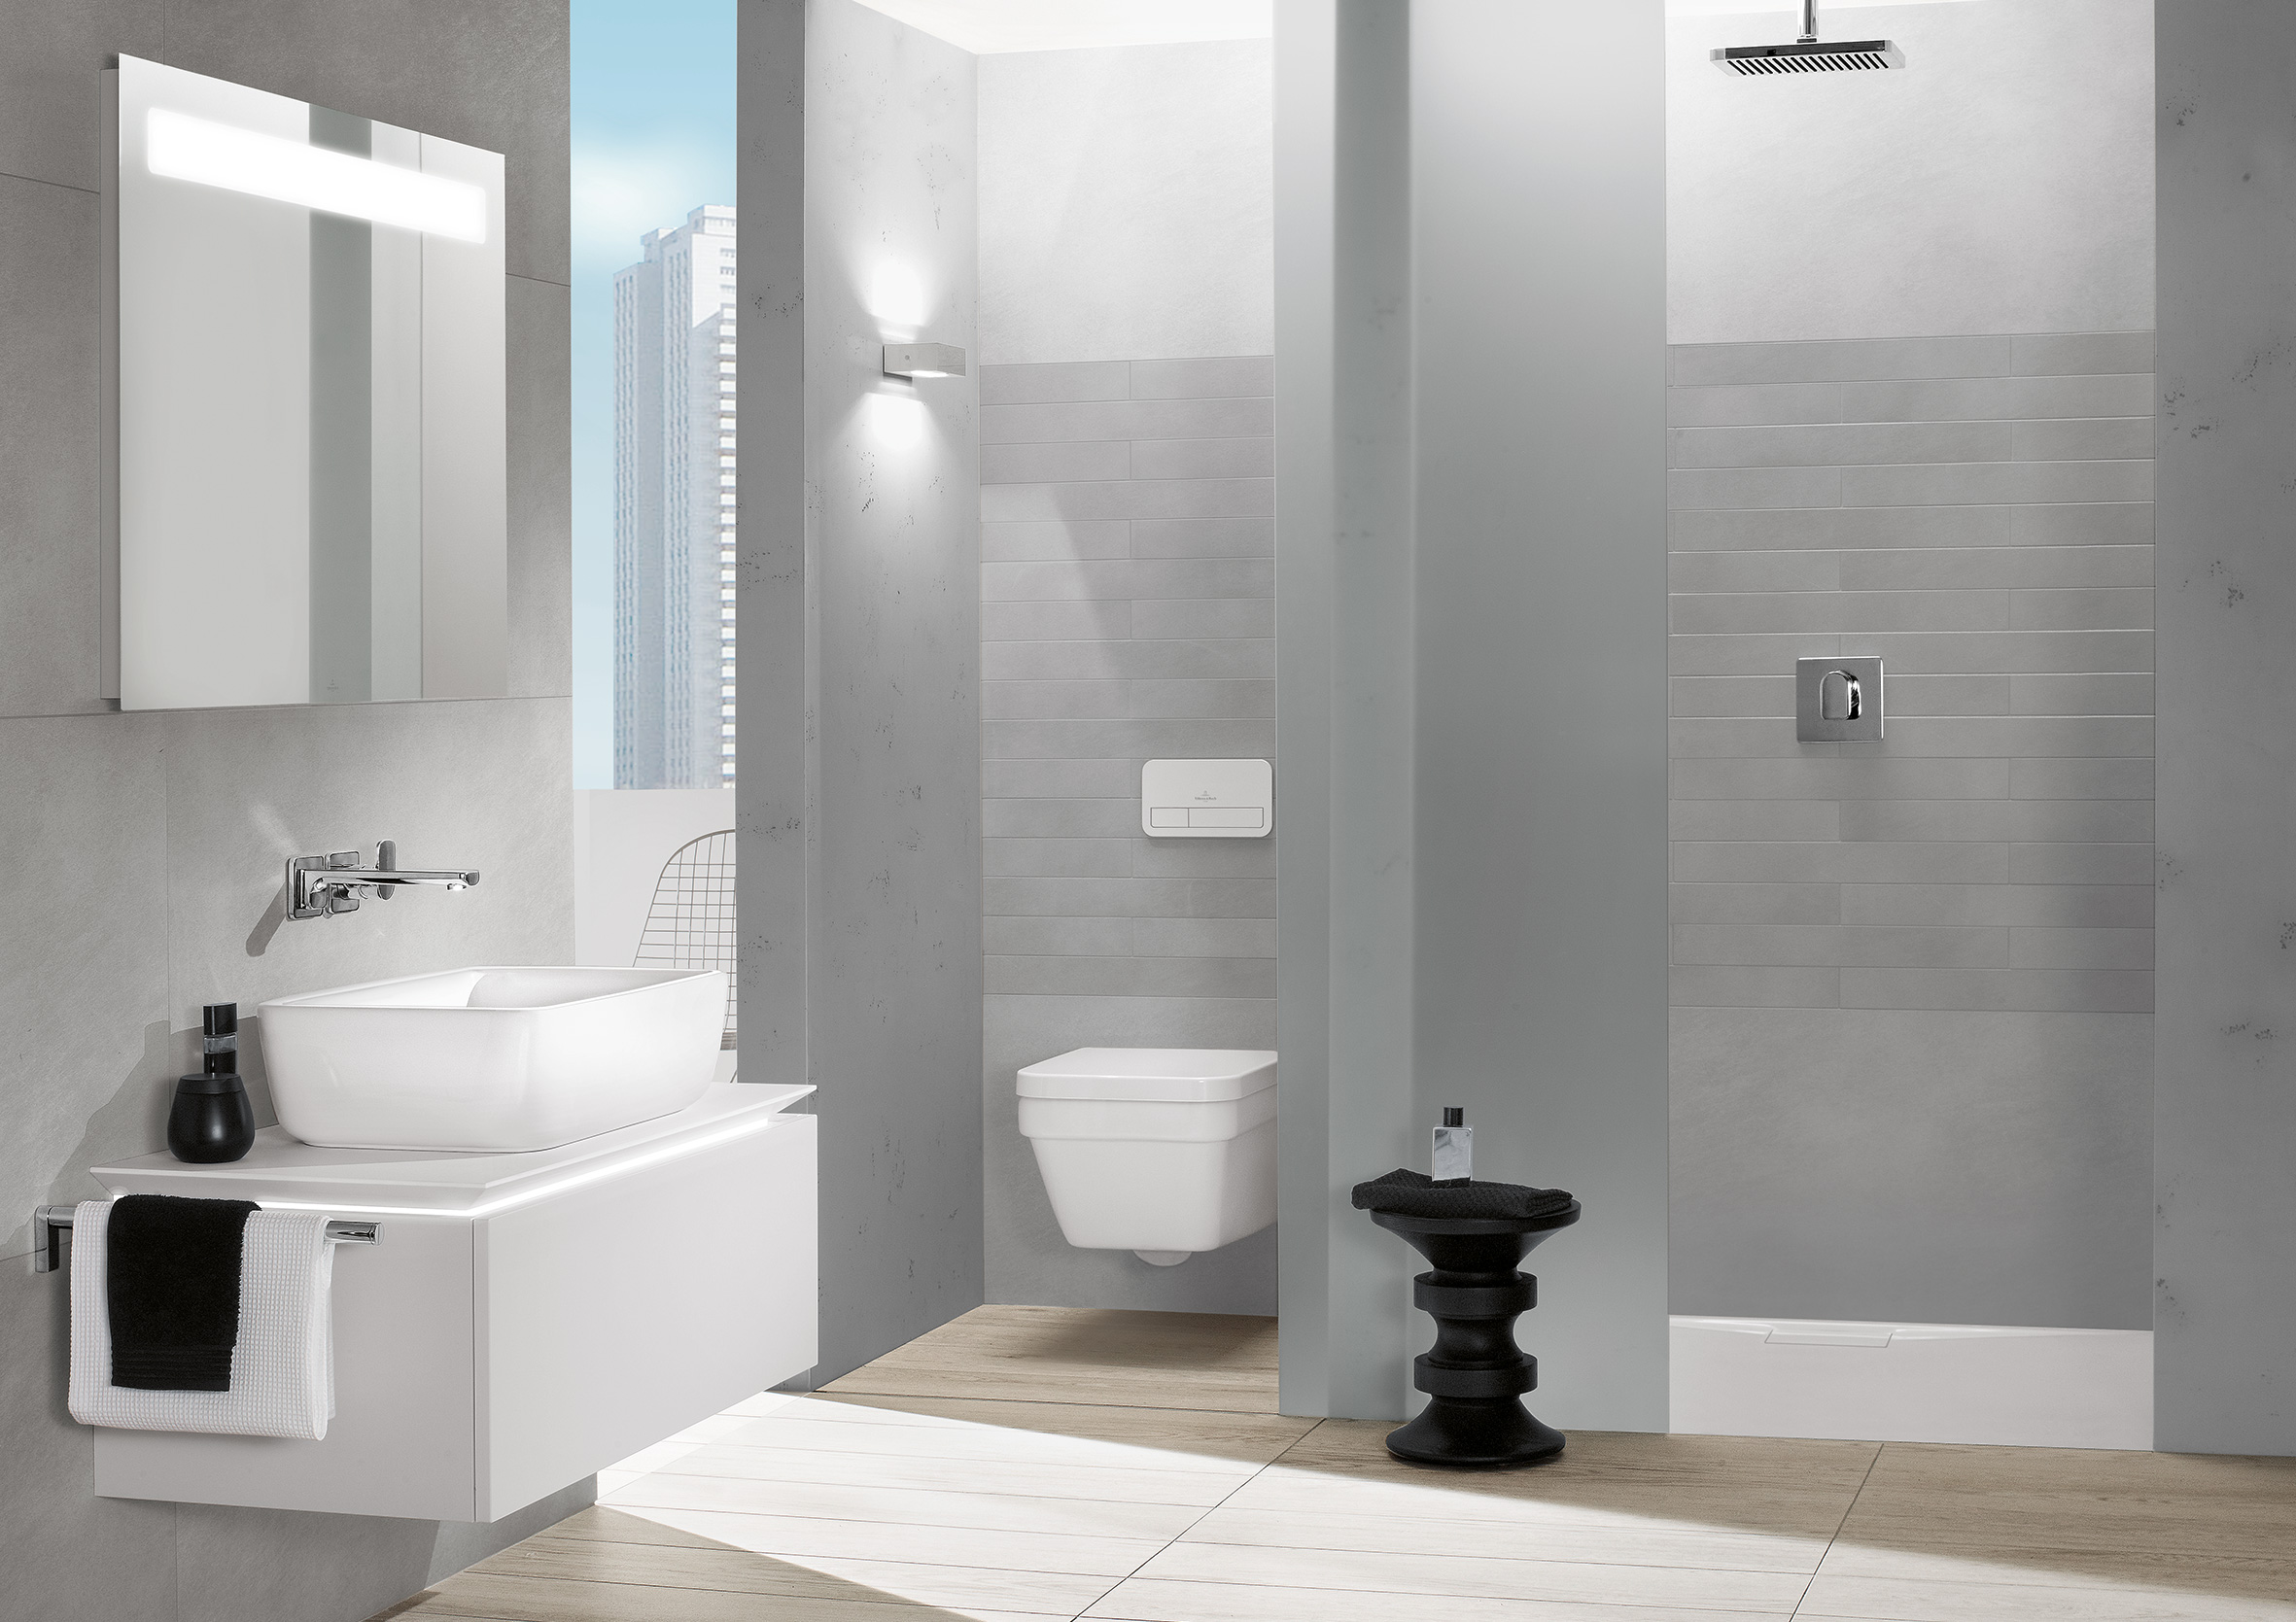 Badezimmer modern: Grau/Weiß Farbtöne